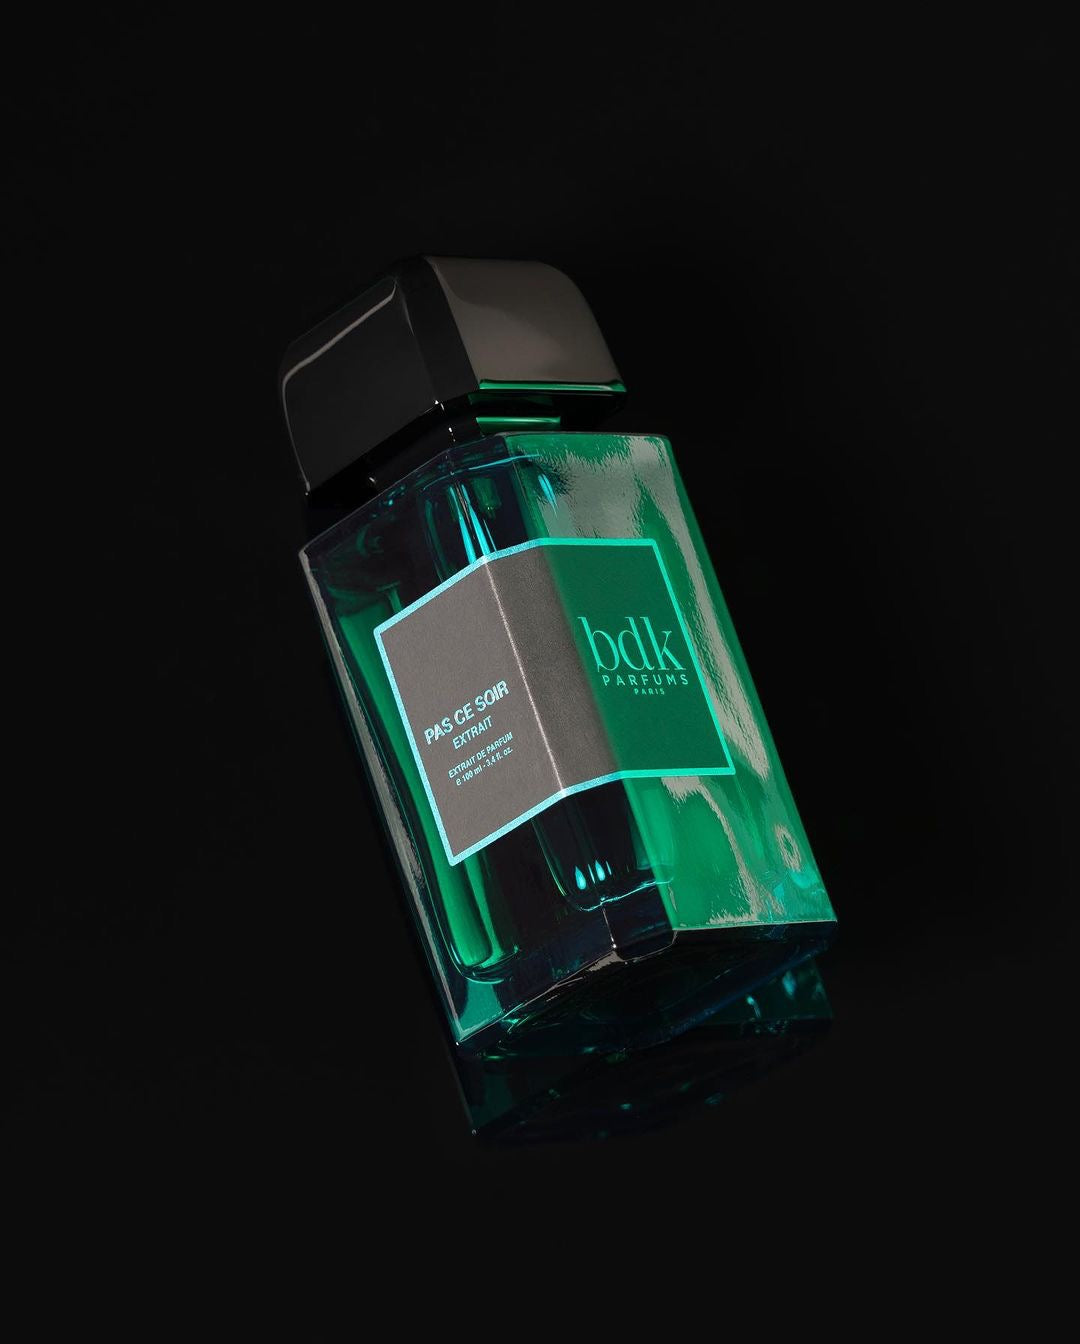 BDK Parfums – La Jetée Perfumery